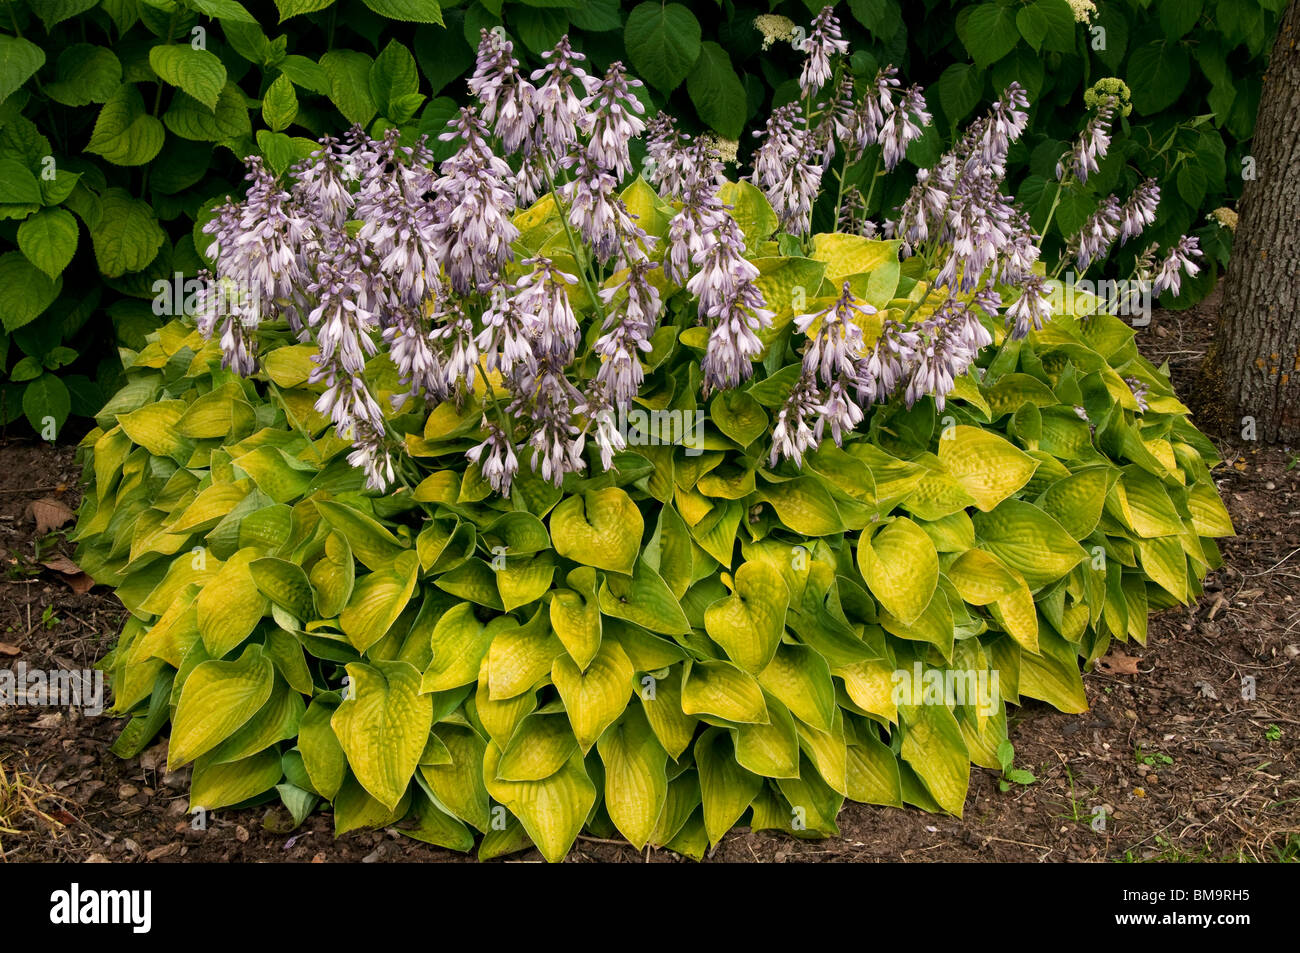 Hosta (Hosta Gold Edger), flowering. Stock Photo